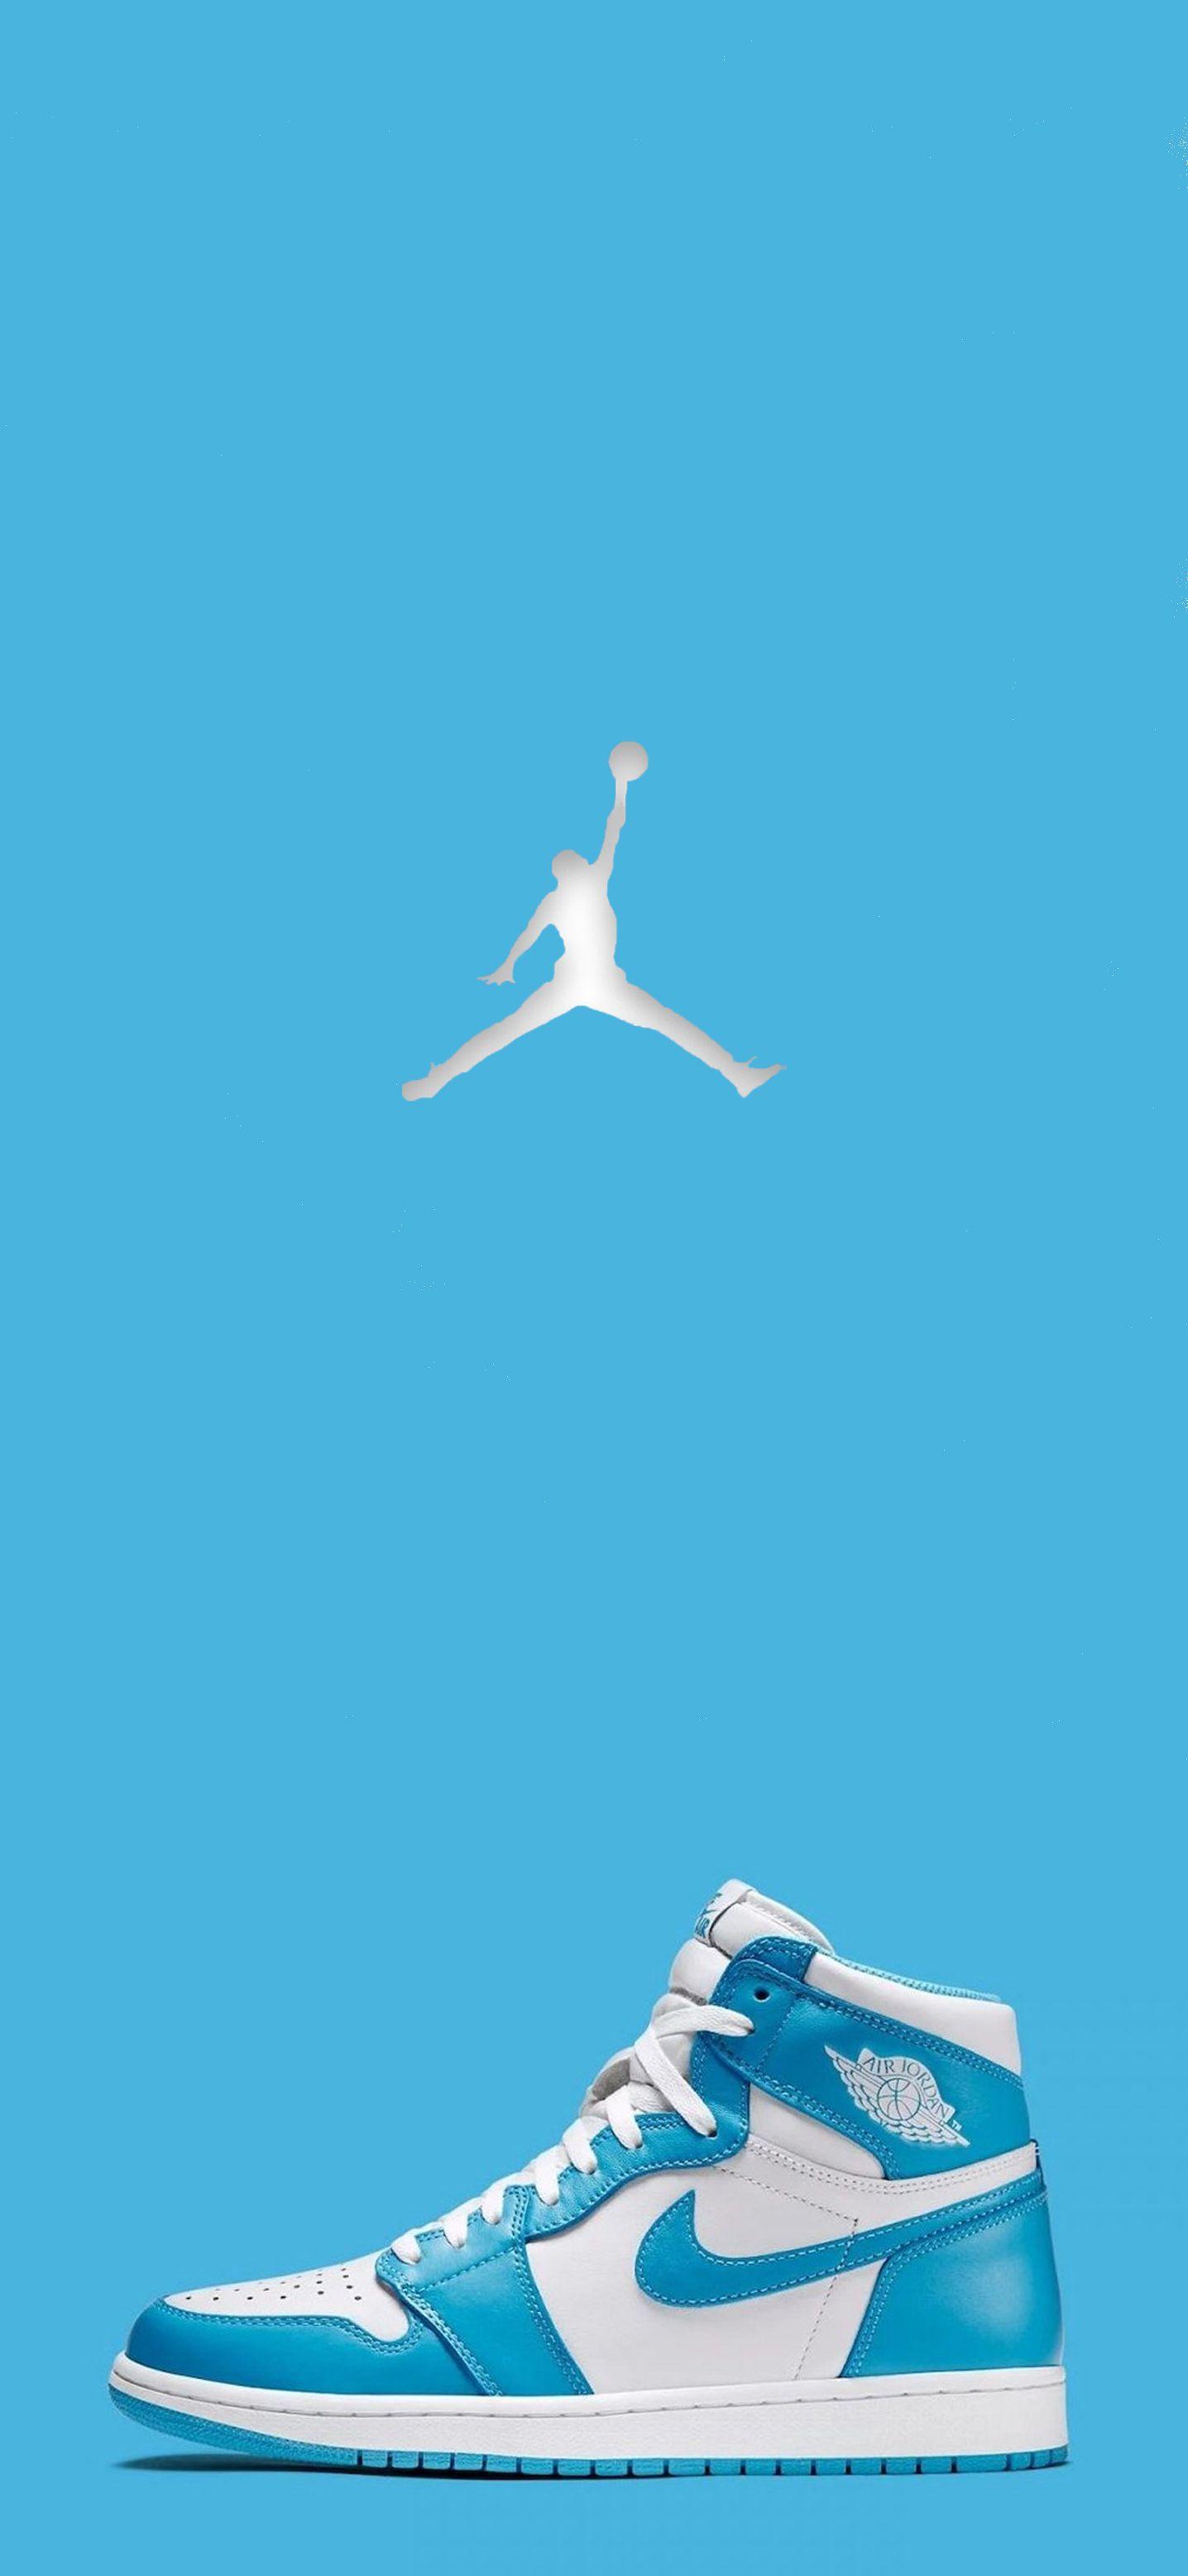 Nike Jordan 1 Wallpapers - Top Free 